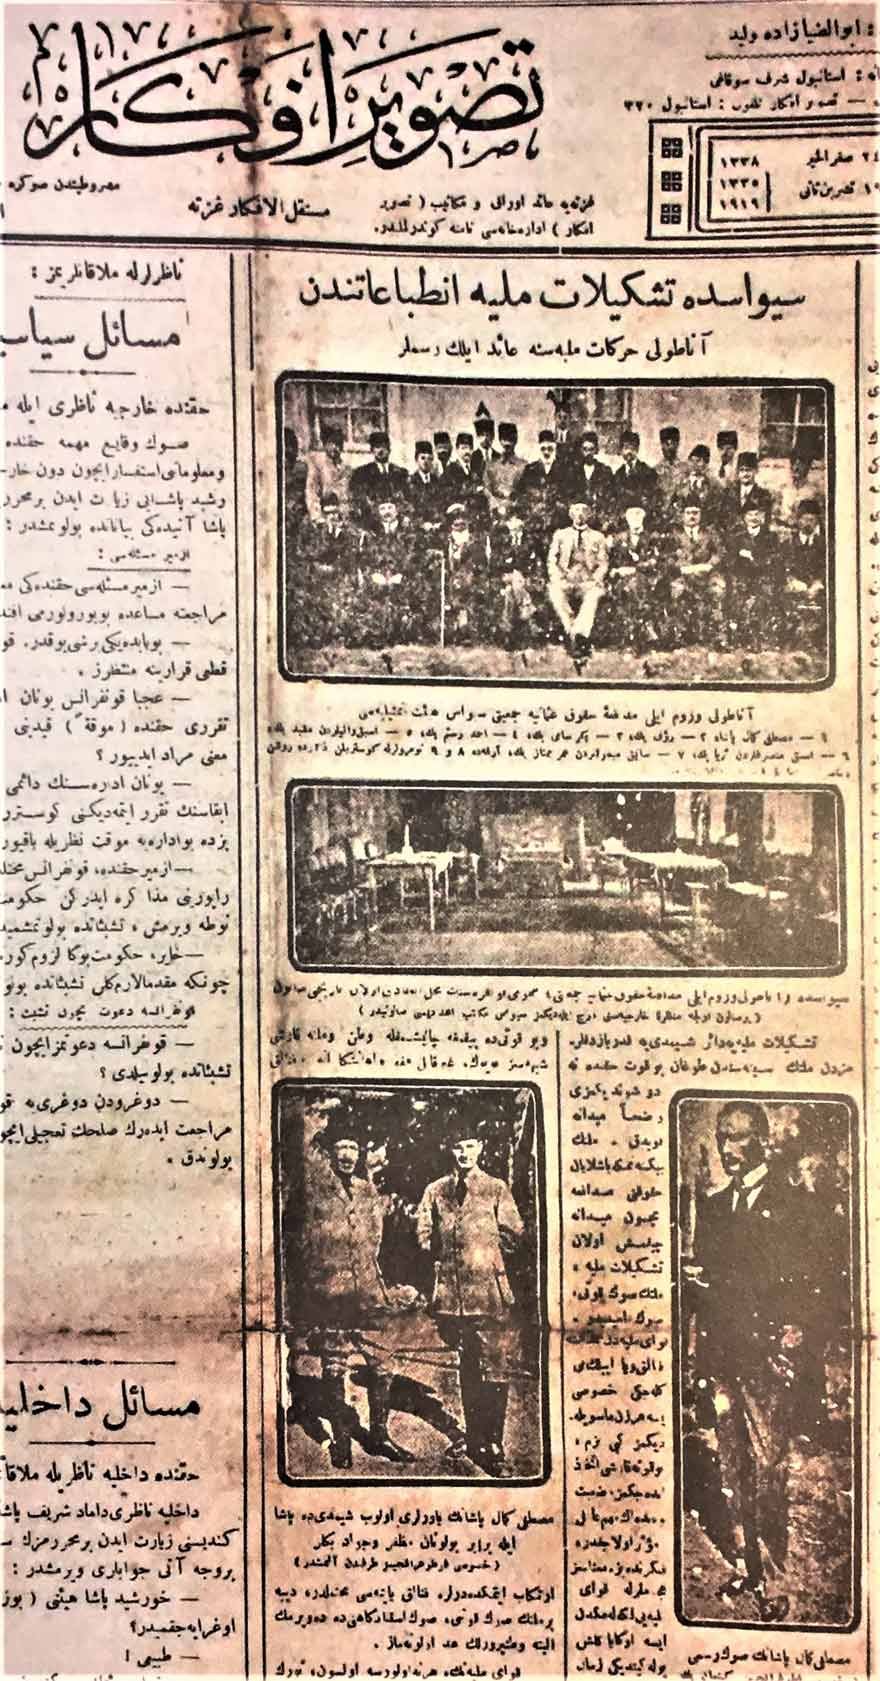 Tasvir-i Efkar, ‘Sivas’ta teşkilat-ı milliye intibahatından Anadolu hareketi milliyesine aid ilk resimler’ başlığı altında Sivas Kongresi’nden ilk resimleri yayımlamıştı. (19 Kasım 1919) 